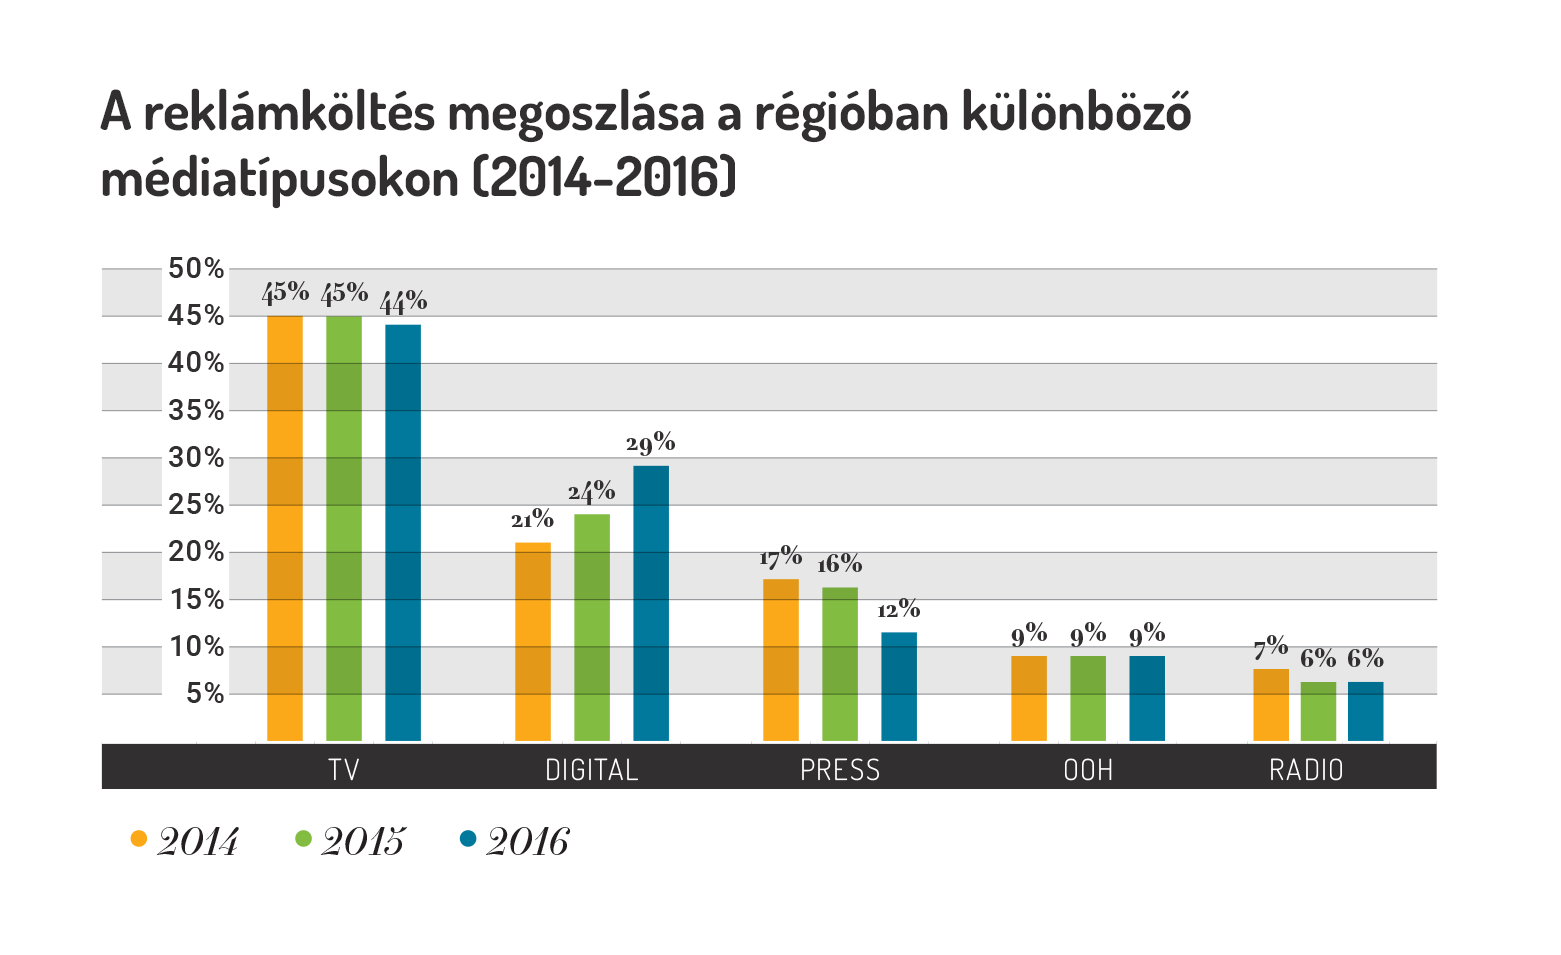 A reklámköltés megoszlása a régióban a különböző médiatípusokban (2014-2016)